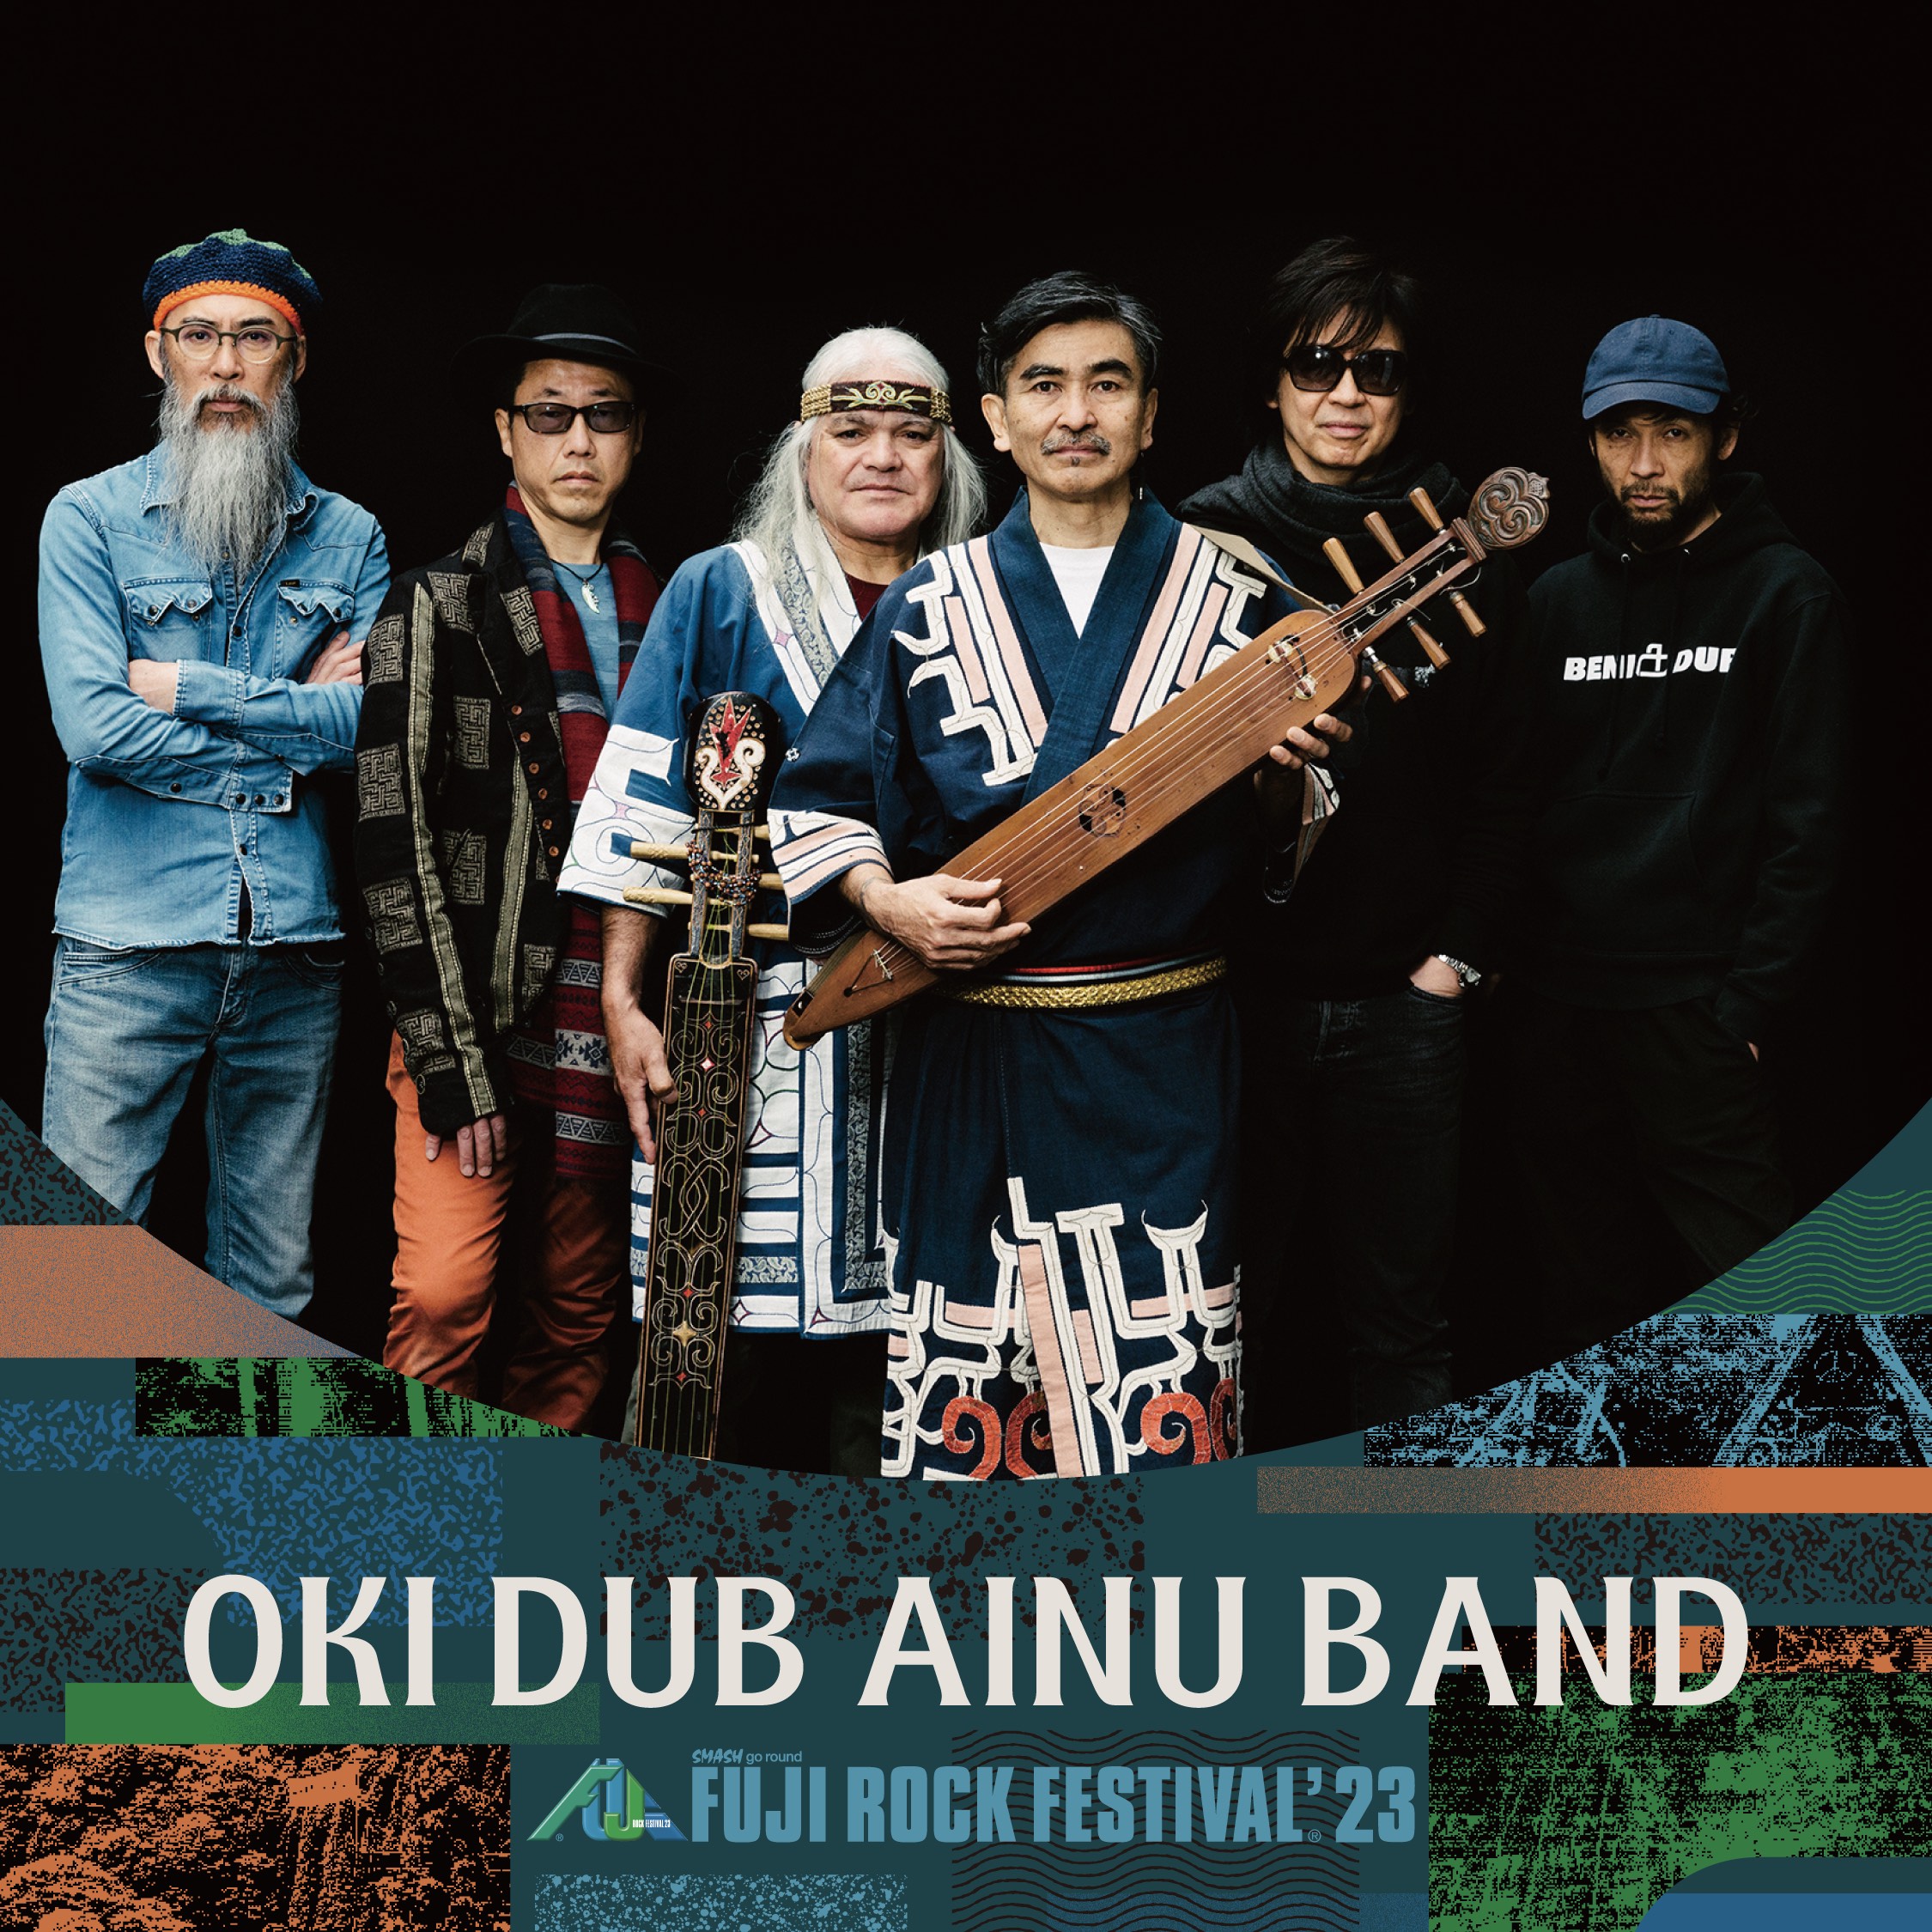 OKI DUB AINU BAND FUJI ROCK FESTIVAL ’23  7/30